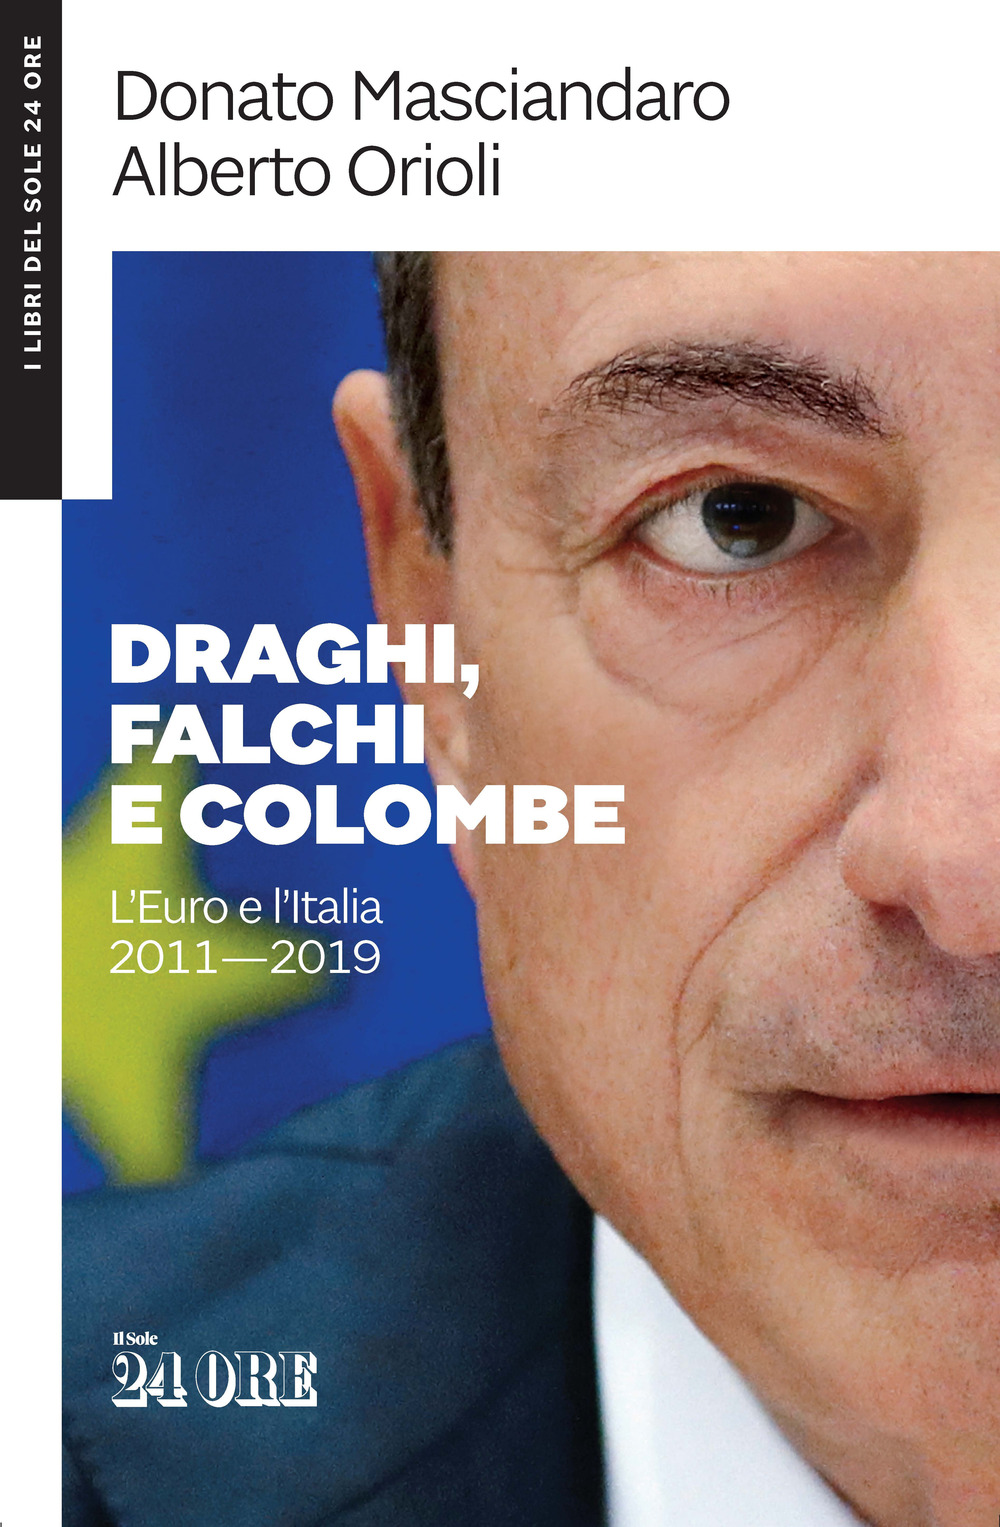 DRAGHI, FALCHI E COLOMBE. L'EURO E L'ITALIA 2011-2019 - Masciandaro Donato; Orioli Alberto - 9788863456684